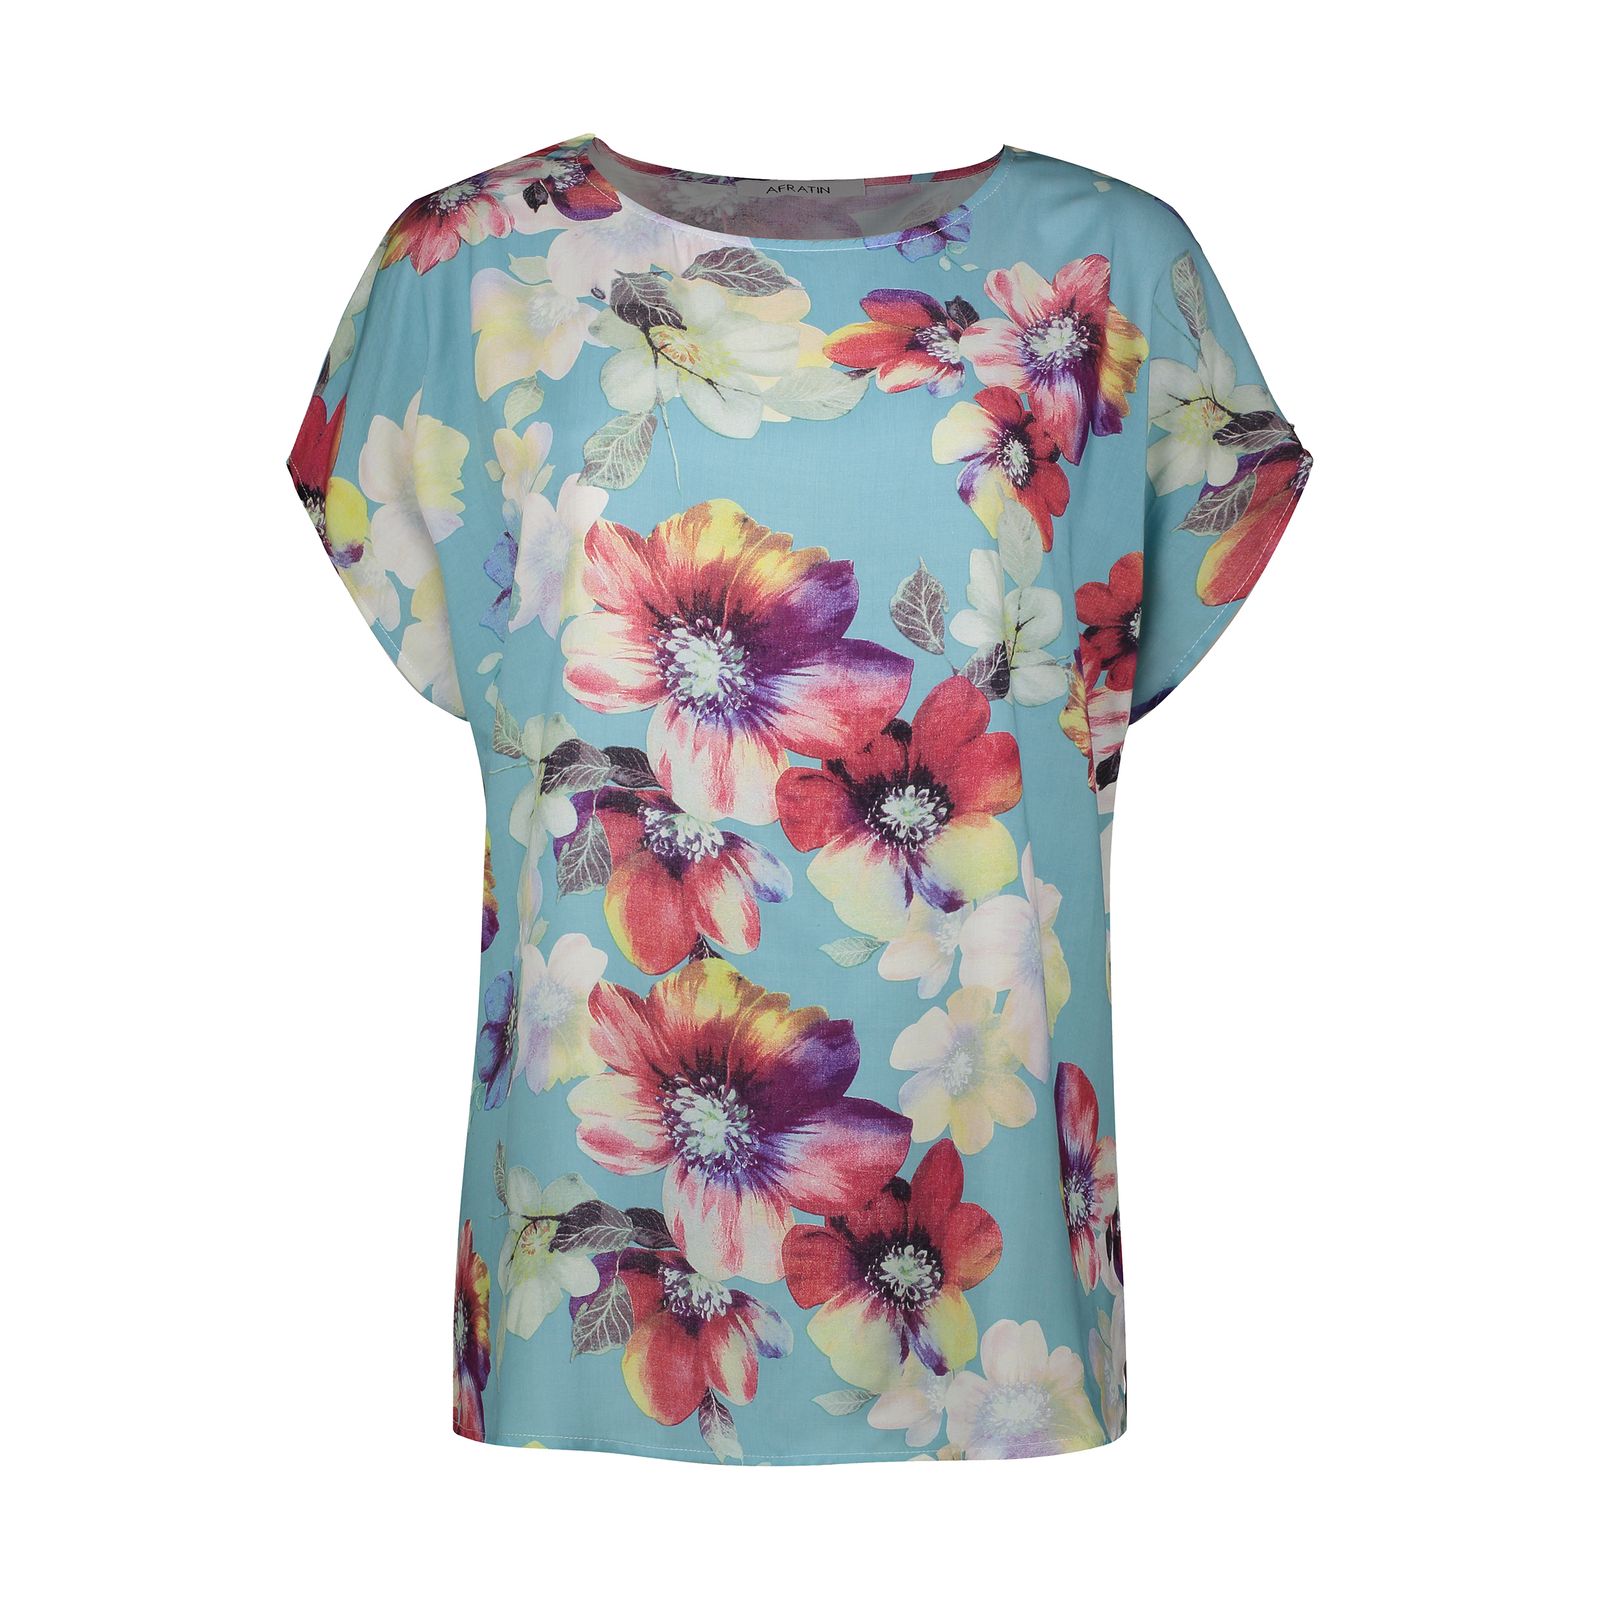 تی شرت آستین کوتاه زنانه افراتین مدل گل کد 2593 رنگ آبی -  - 1